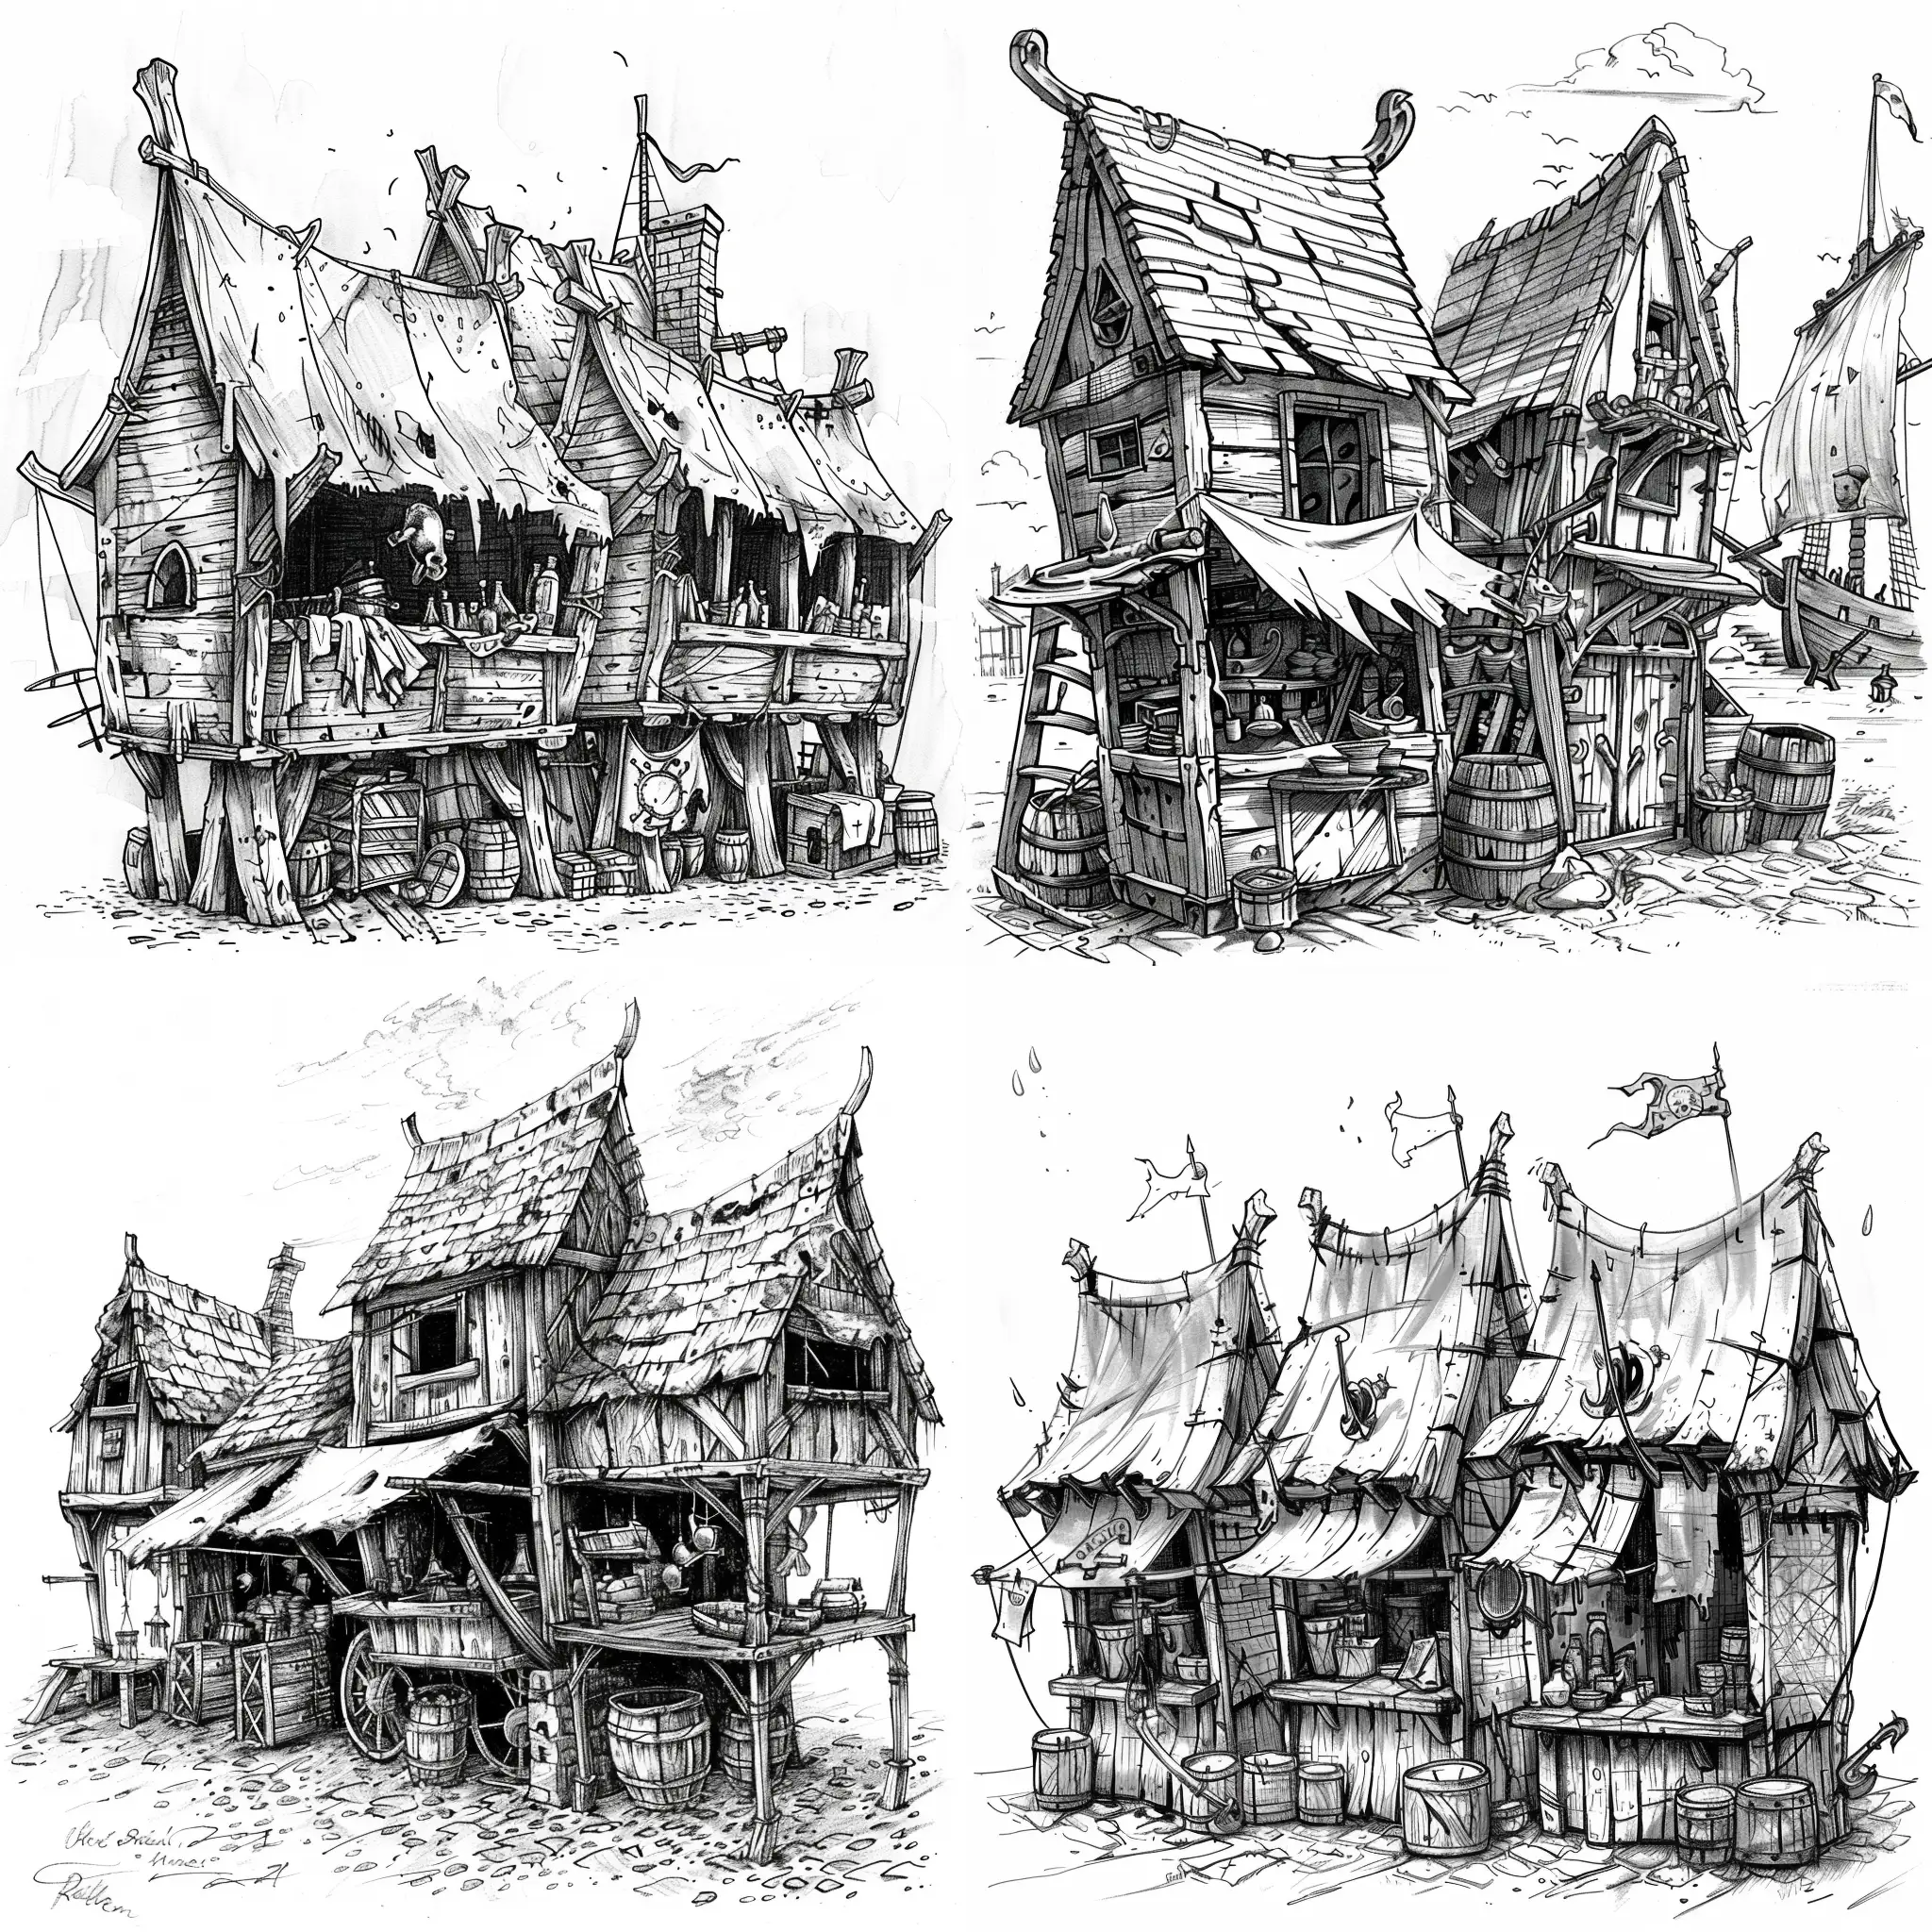 Medieval-Market-Stalls-in-an-Old-Seaside-Village-Sketch